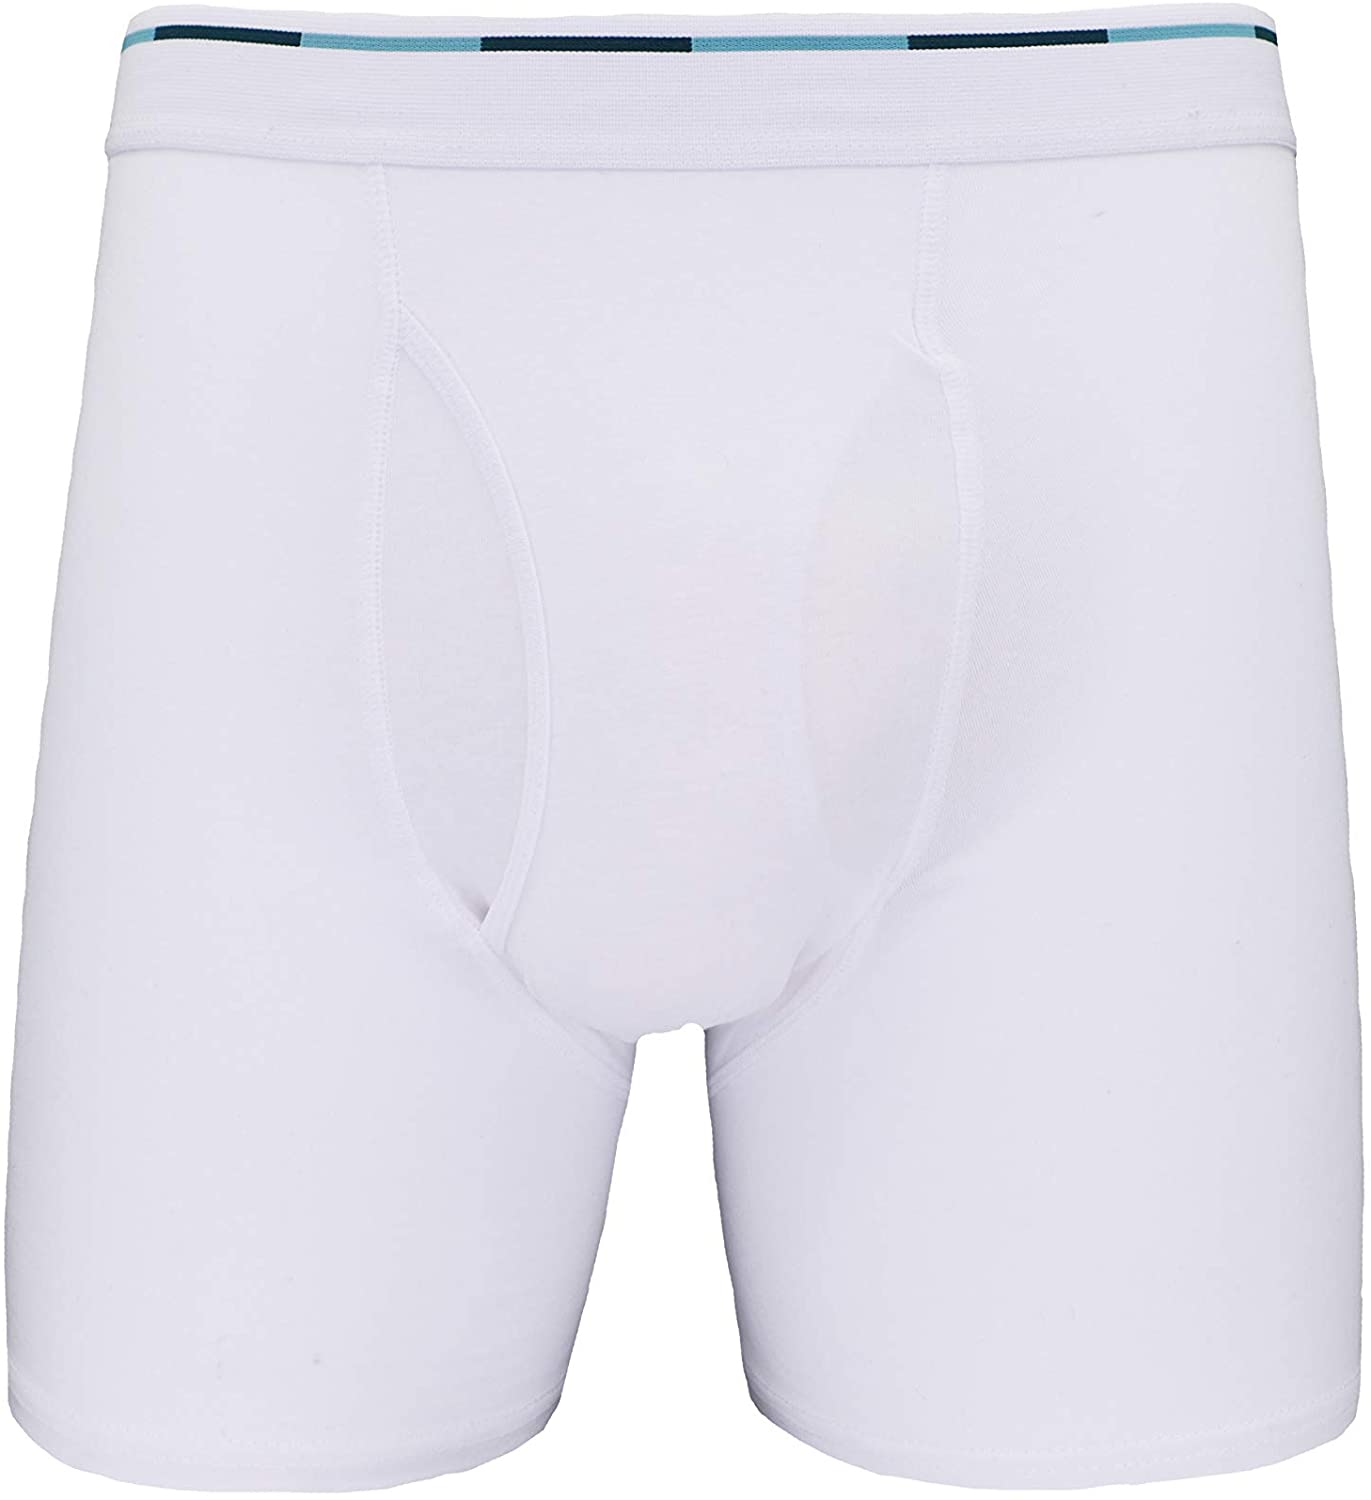 Comfneat Mens Boxer Briefs 6-Pack S-XXL Tagless Underwear Soft Cotton Spandex